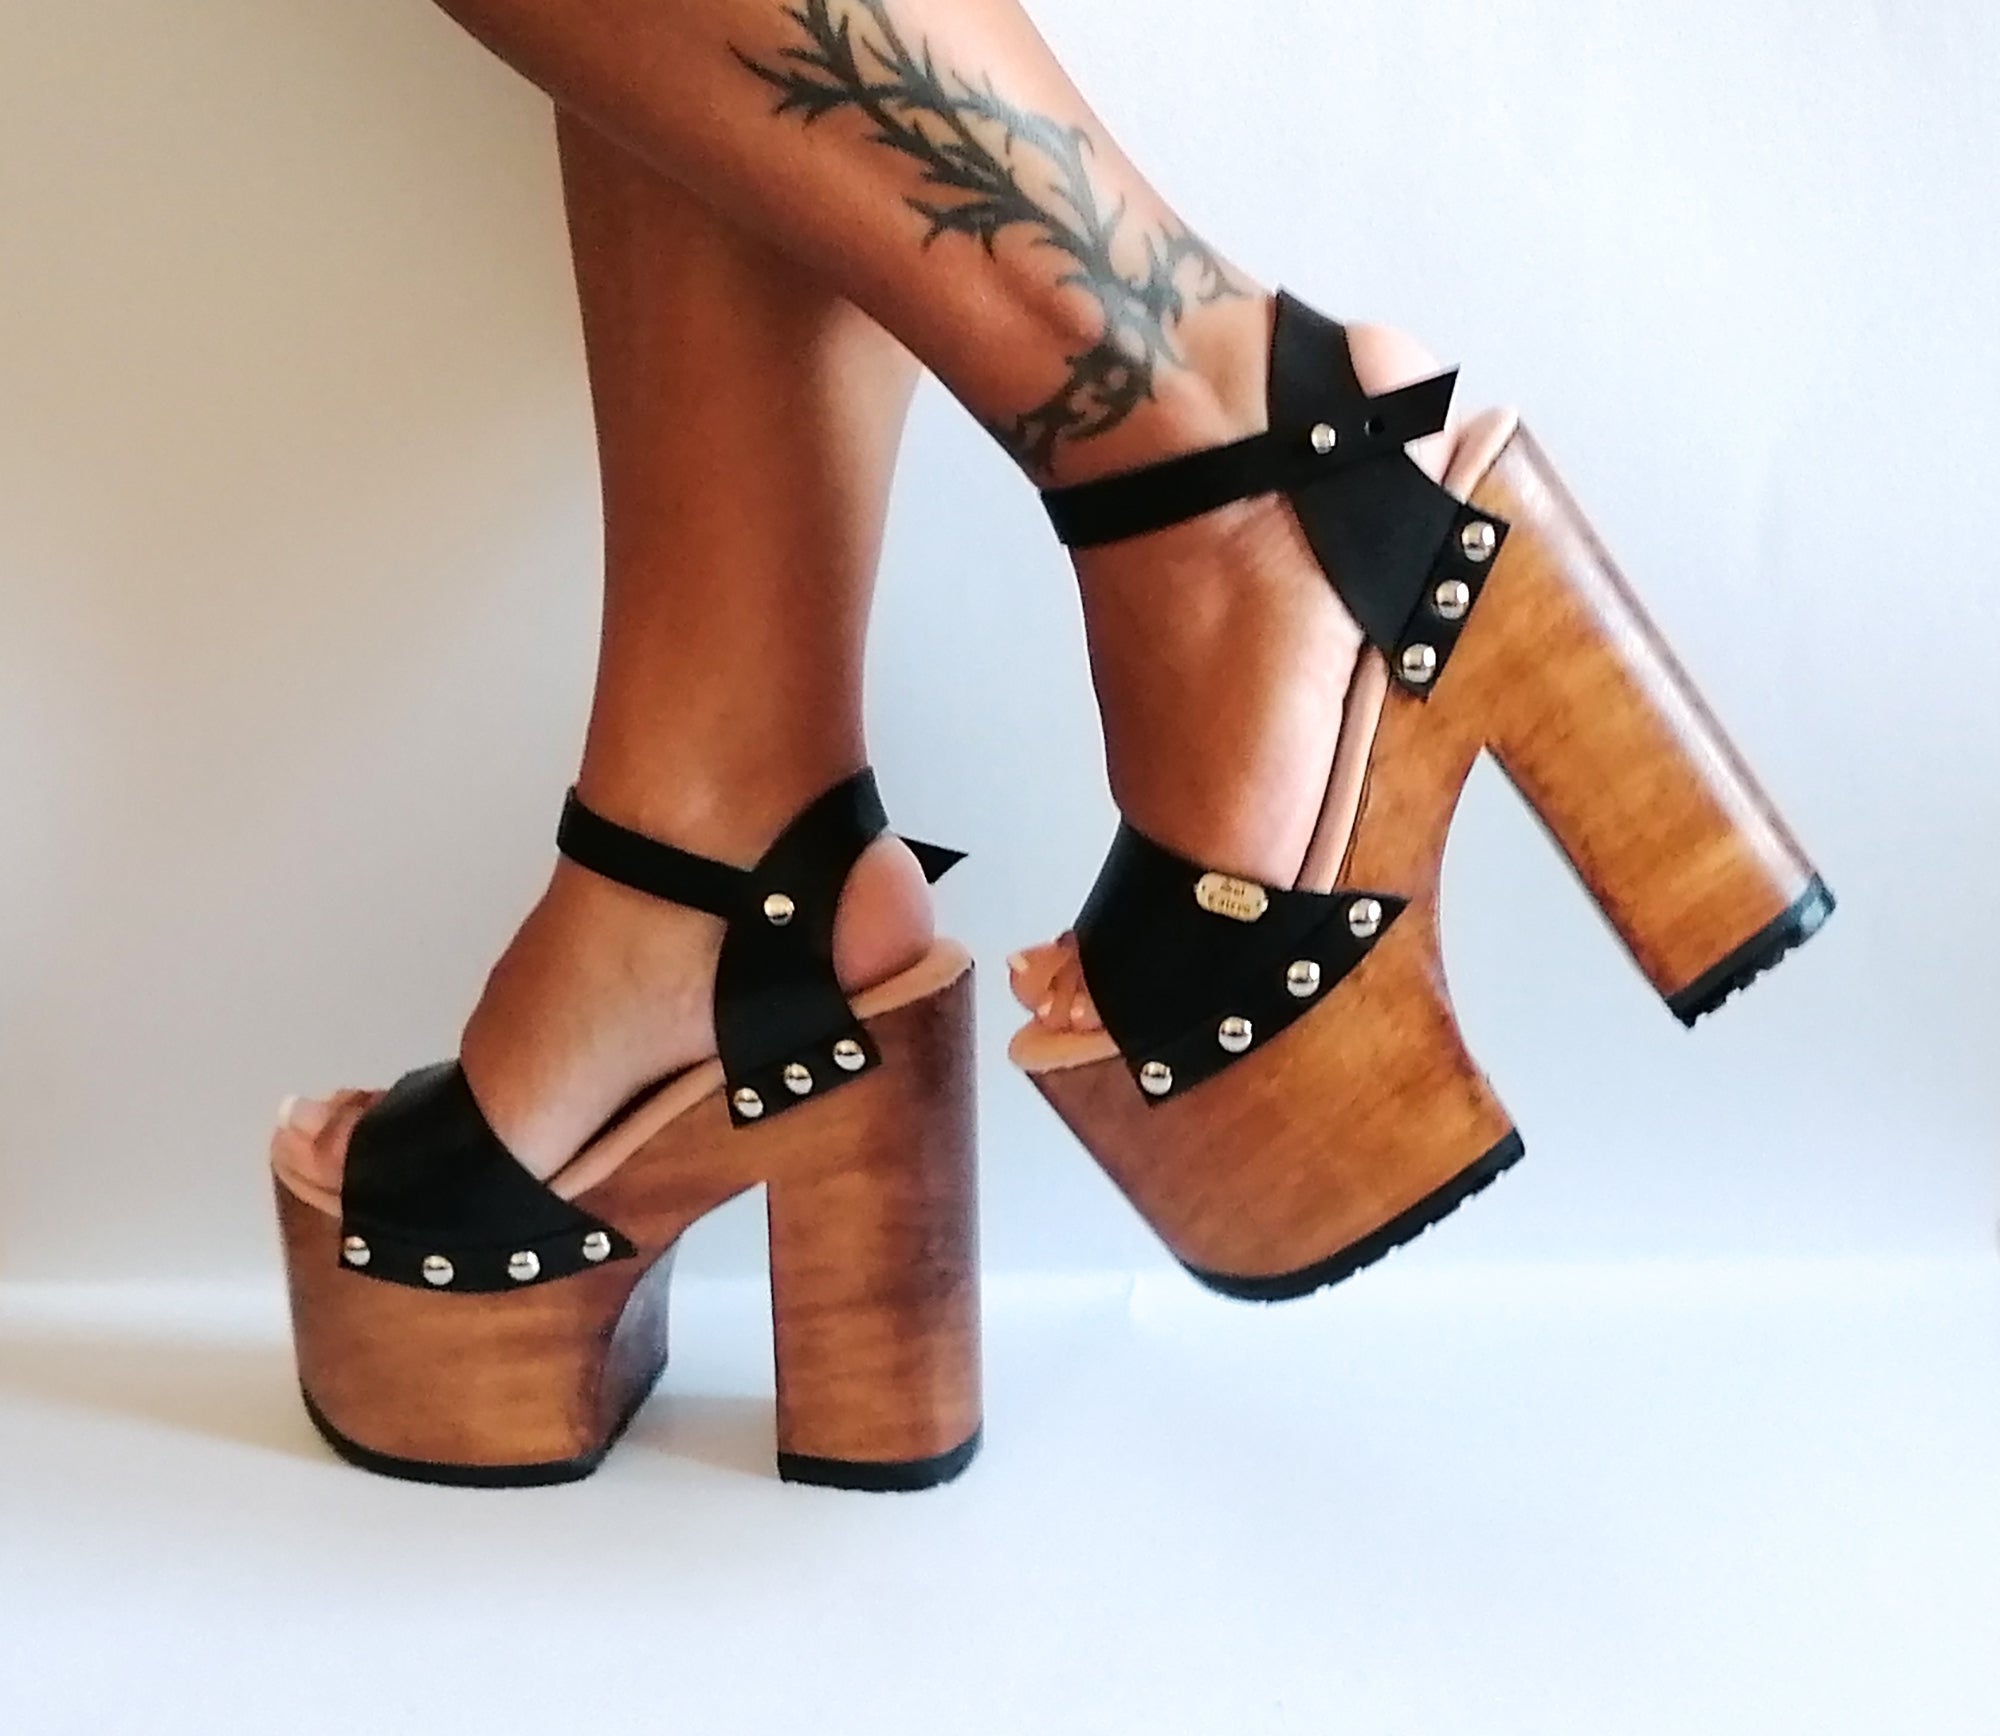 Crazy-Heels - High Heels and sexy Lingerie buy online